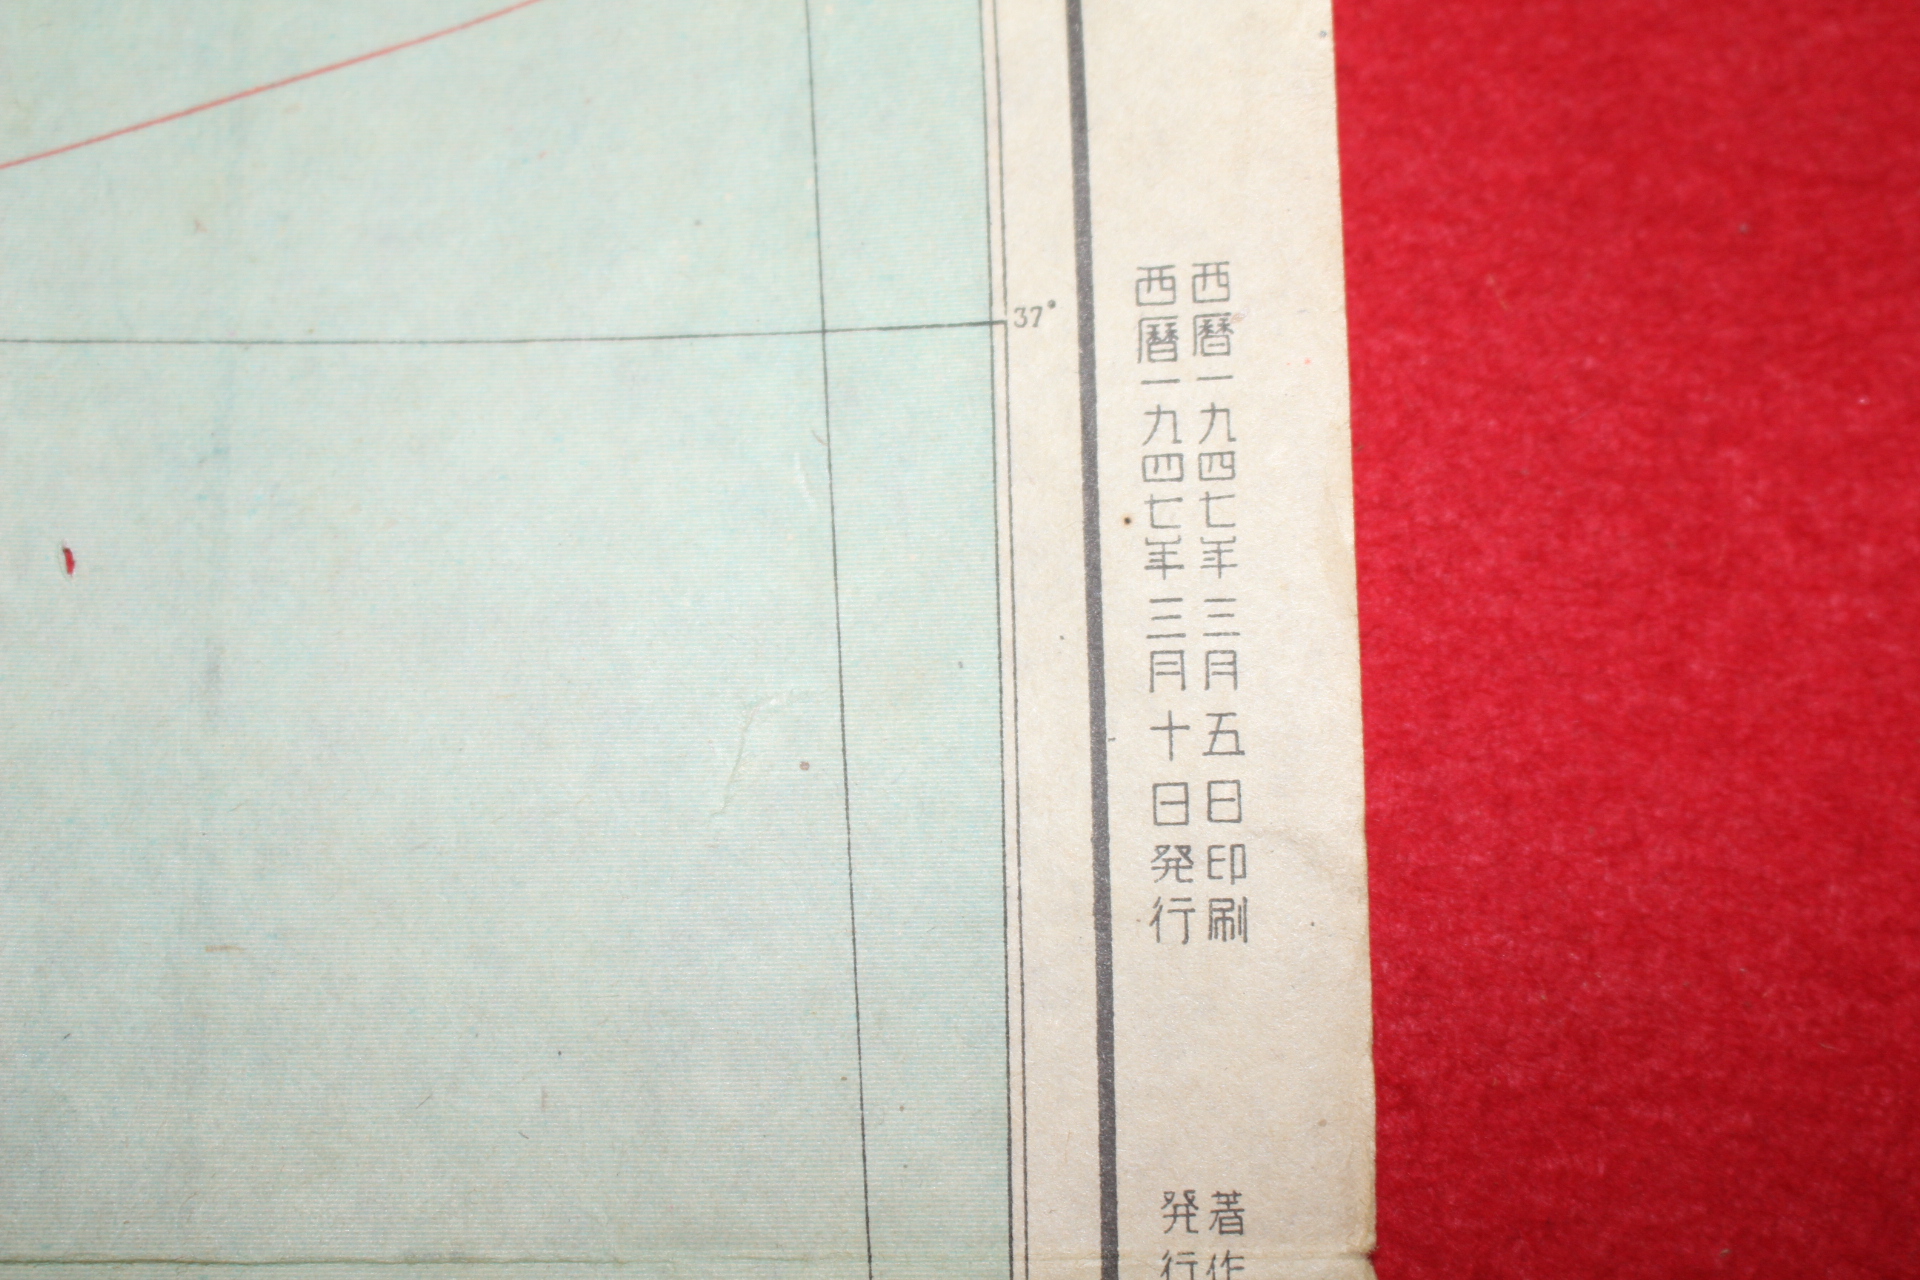 1947년 조선전도(朝鮮全圖)